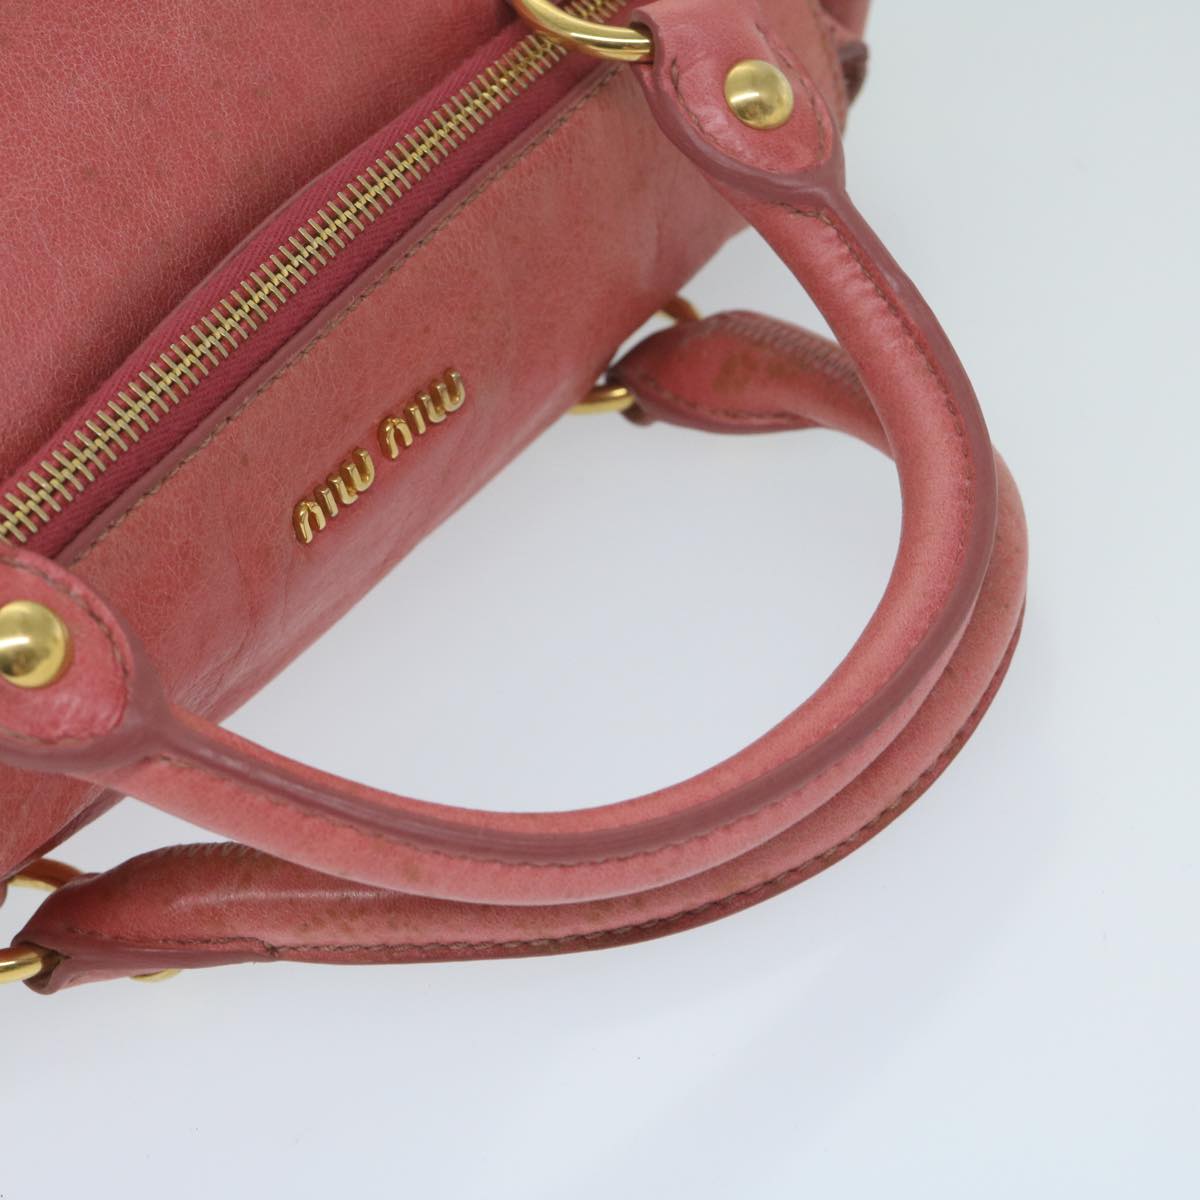 Miu Miu Hand Bag Leather 2way Pink Auth 63445